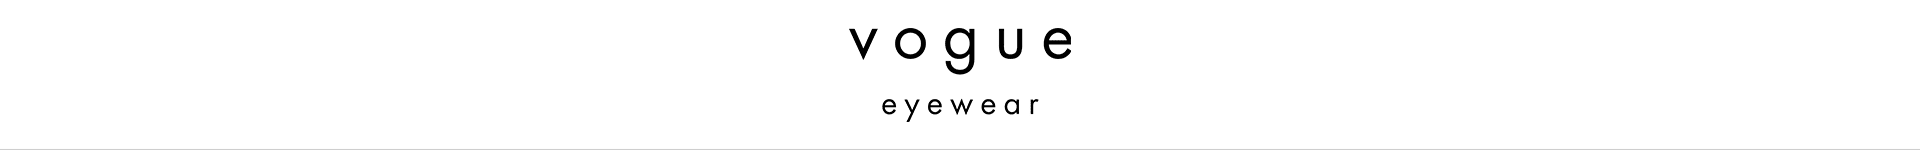 Shop Vogue Sunglasses